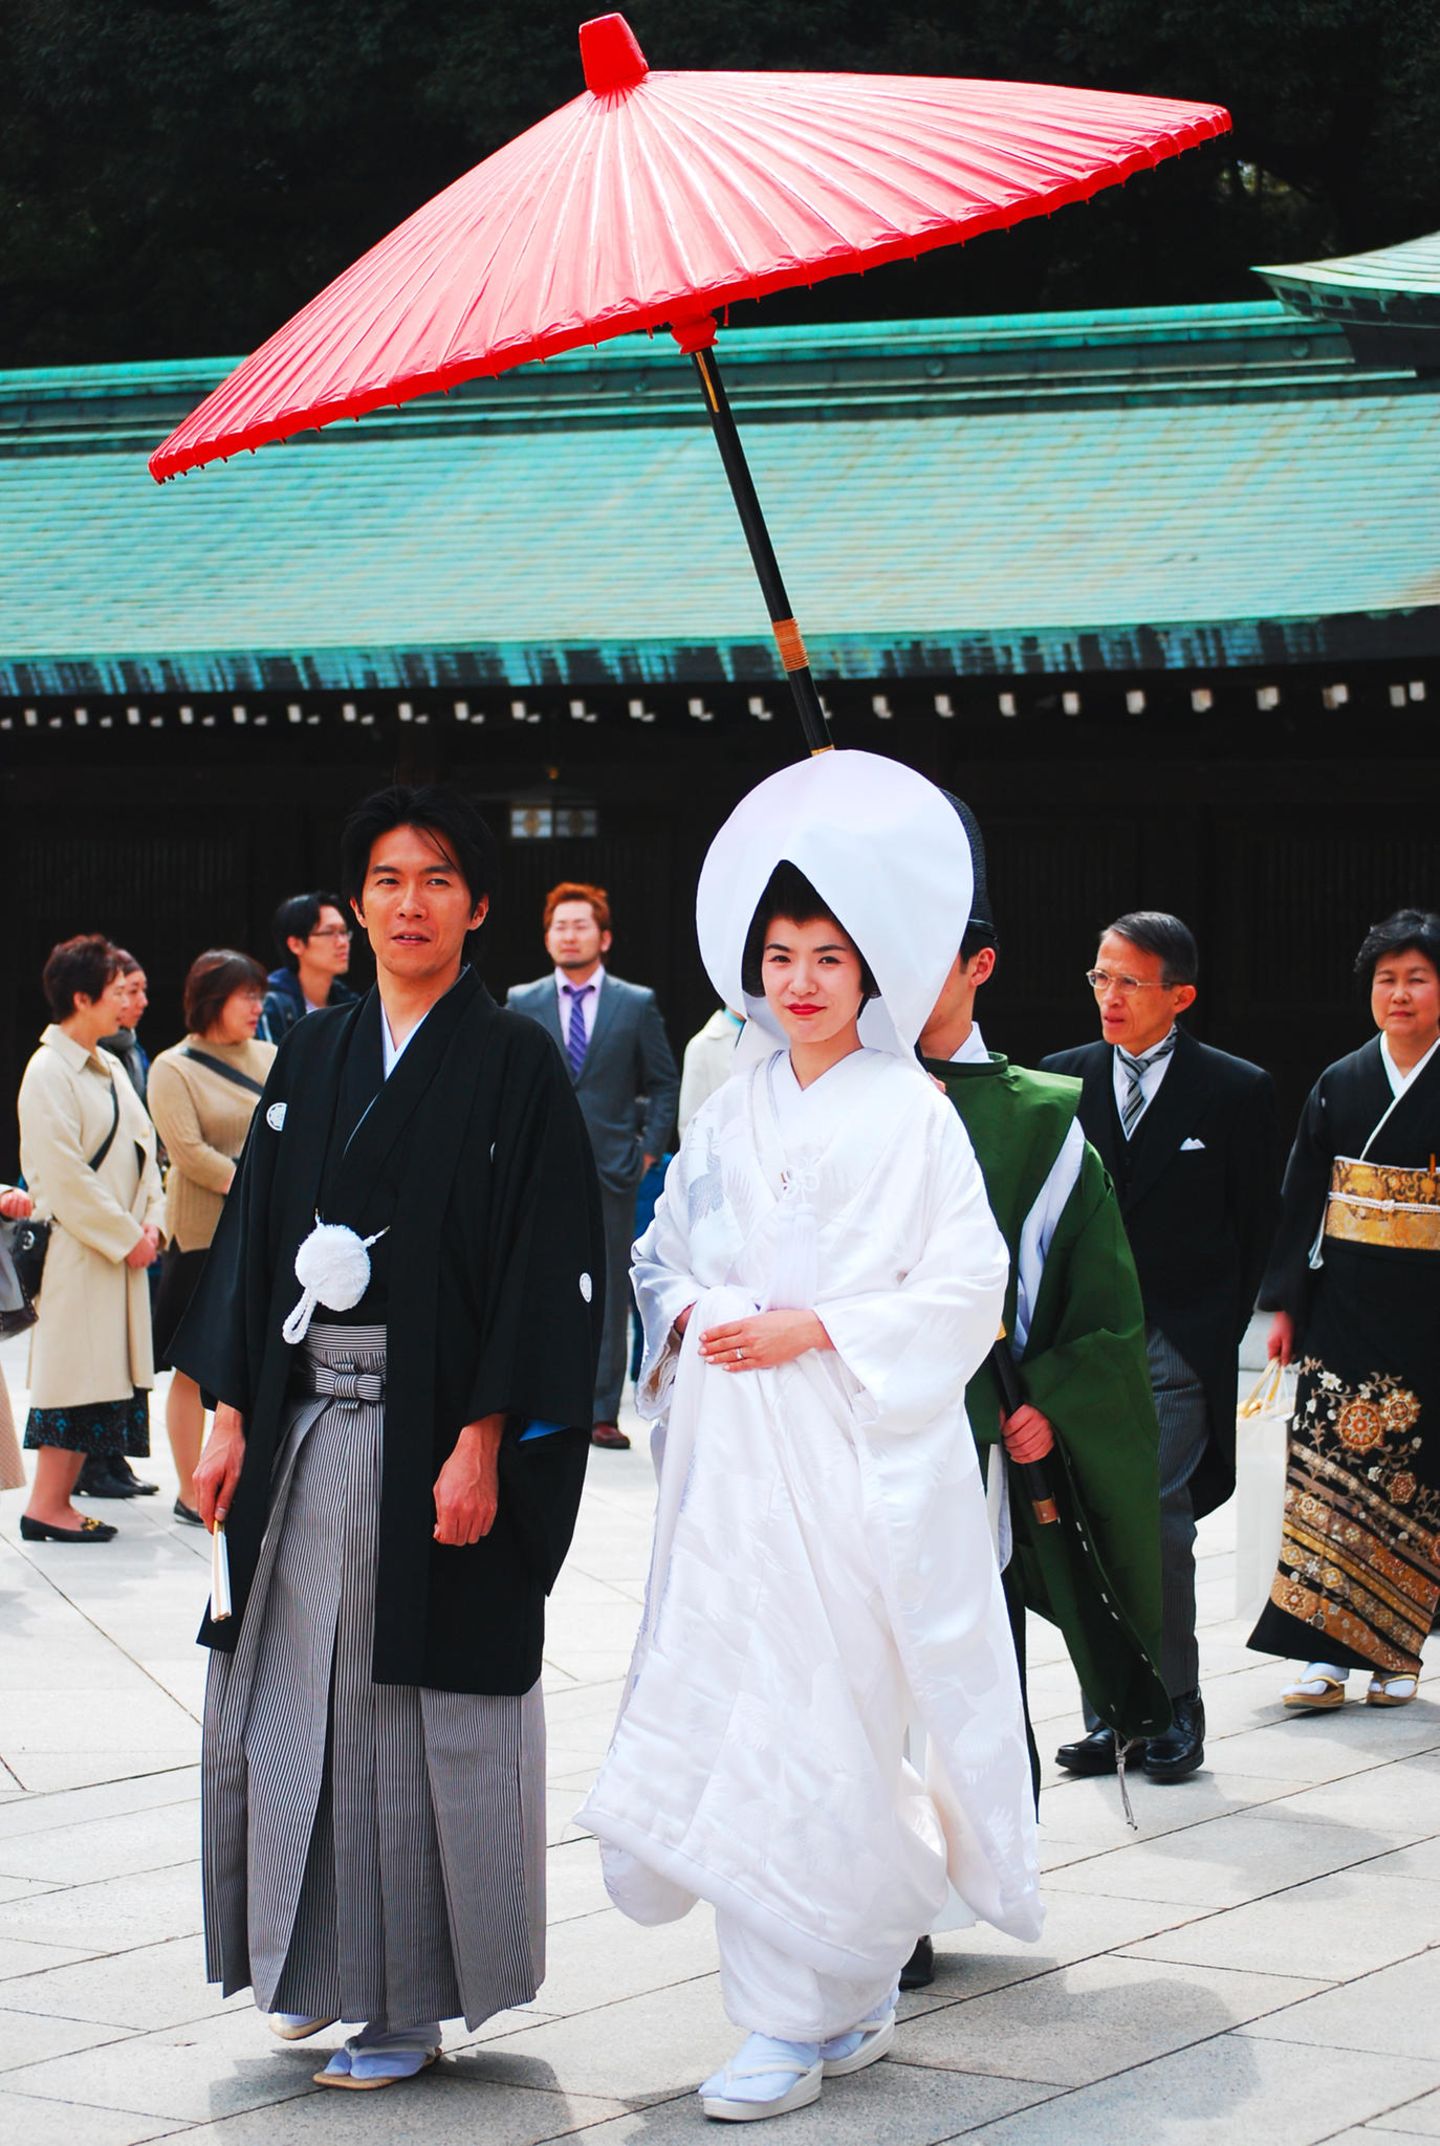 Hochzeitskleider aus aller Welt: Brautpaar in Japan